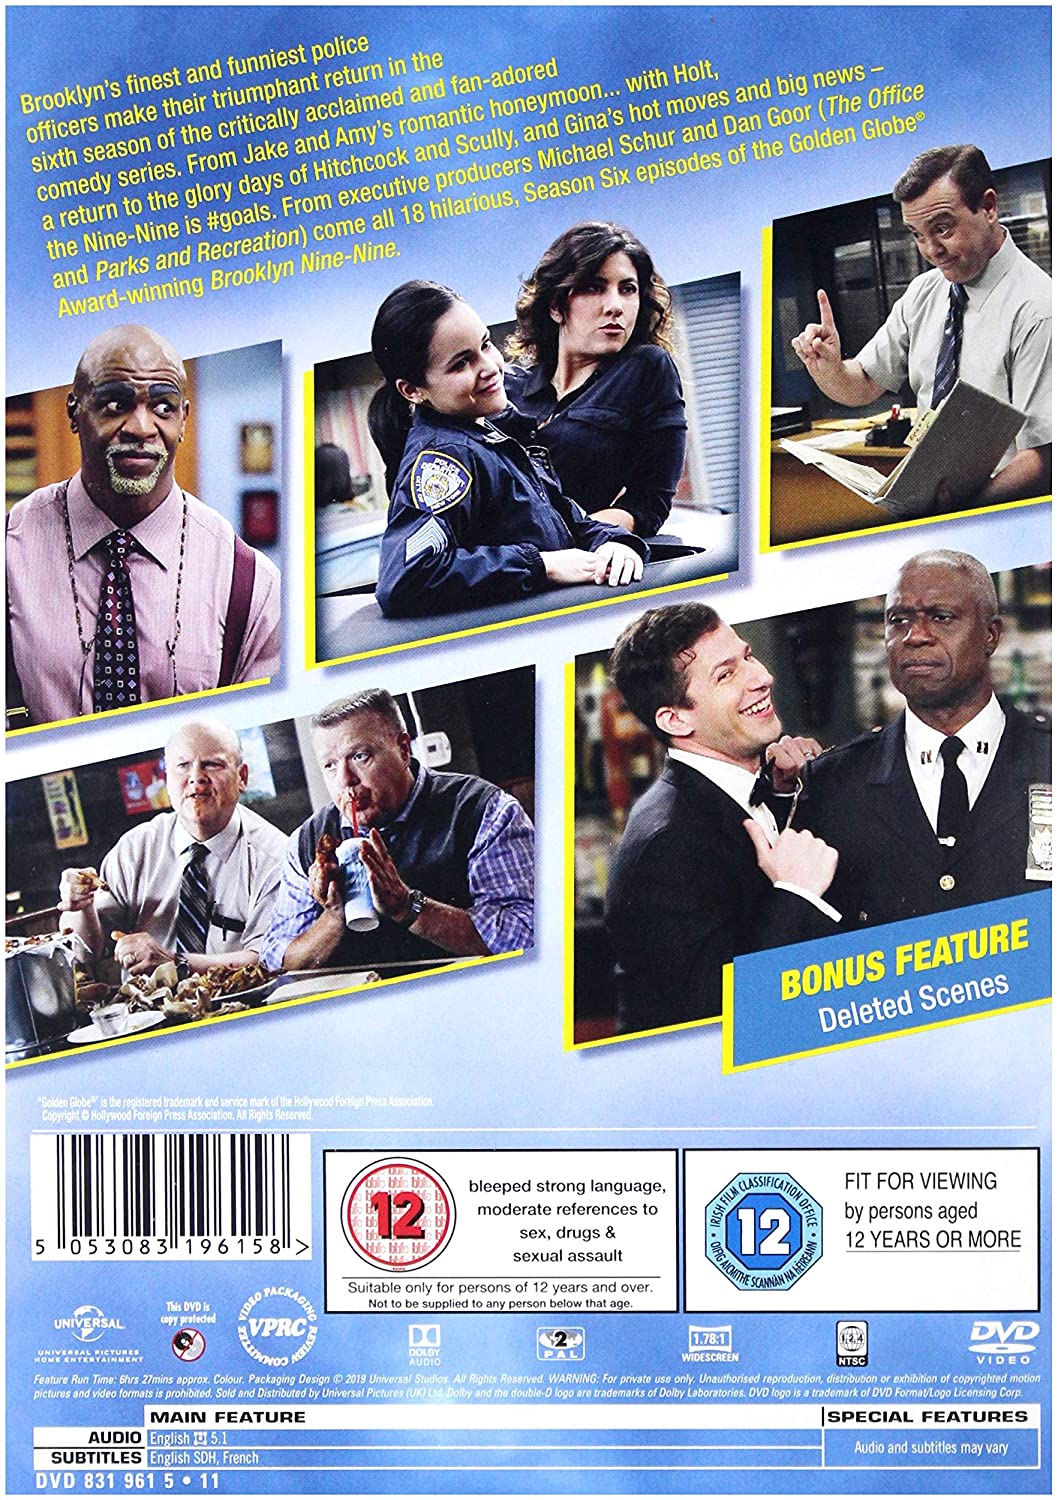 Brooklyn Nine Nine Staffel 6 – Drama [DVD]